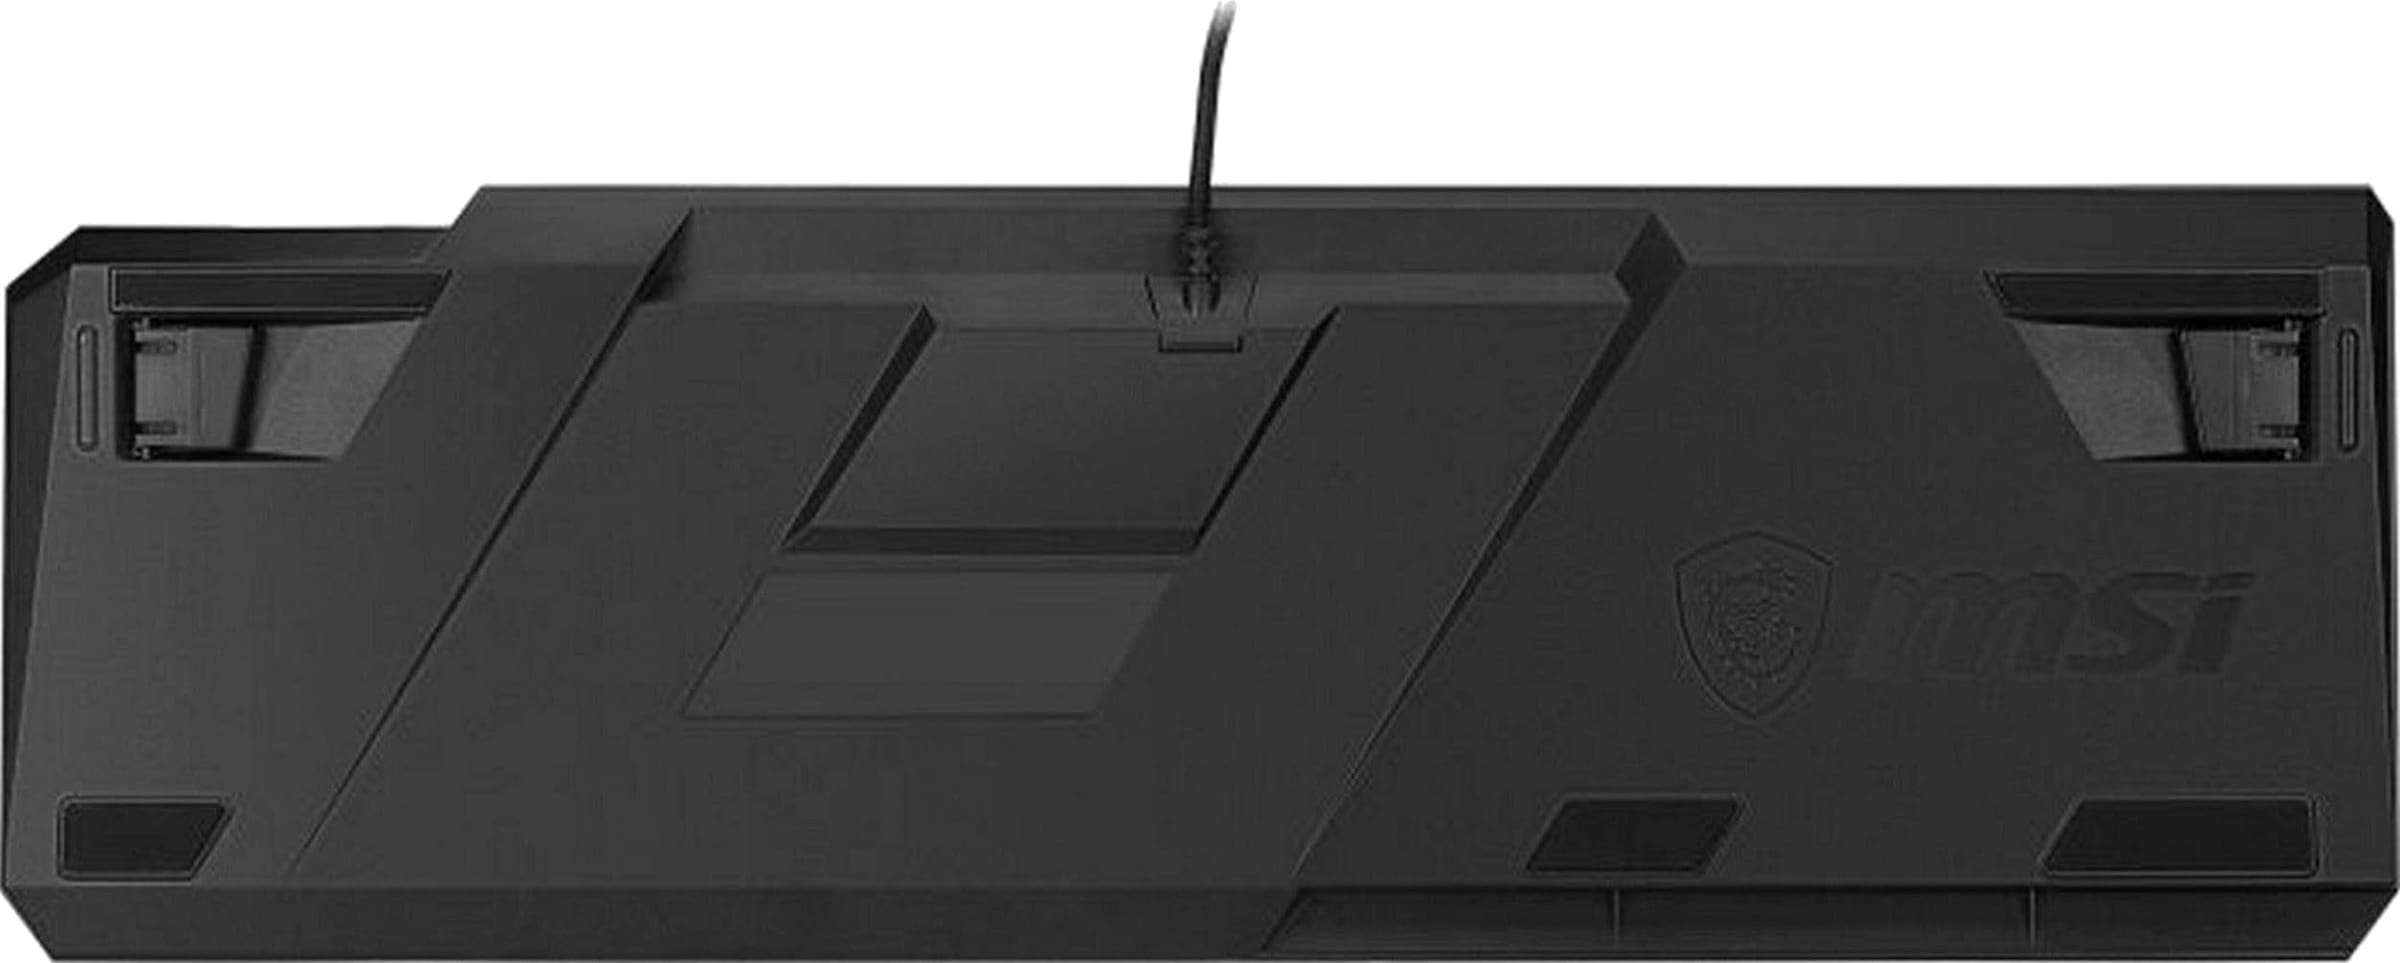 MSI Gaming-Tastatur »VIGOR GK50 LOW PROFILE«, (Fn-Tasten-Multimedia-Tasten-Ziffernblock-ergonomische Form-LCD-Anzeige)